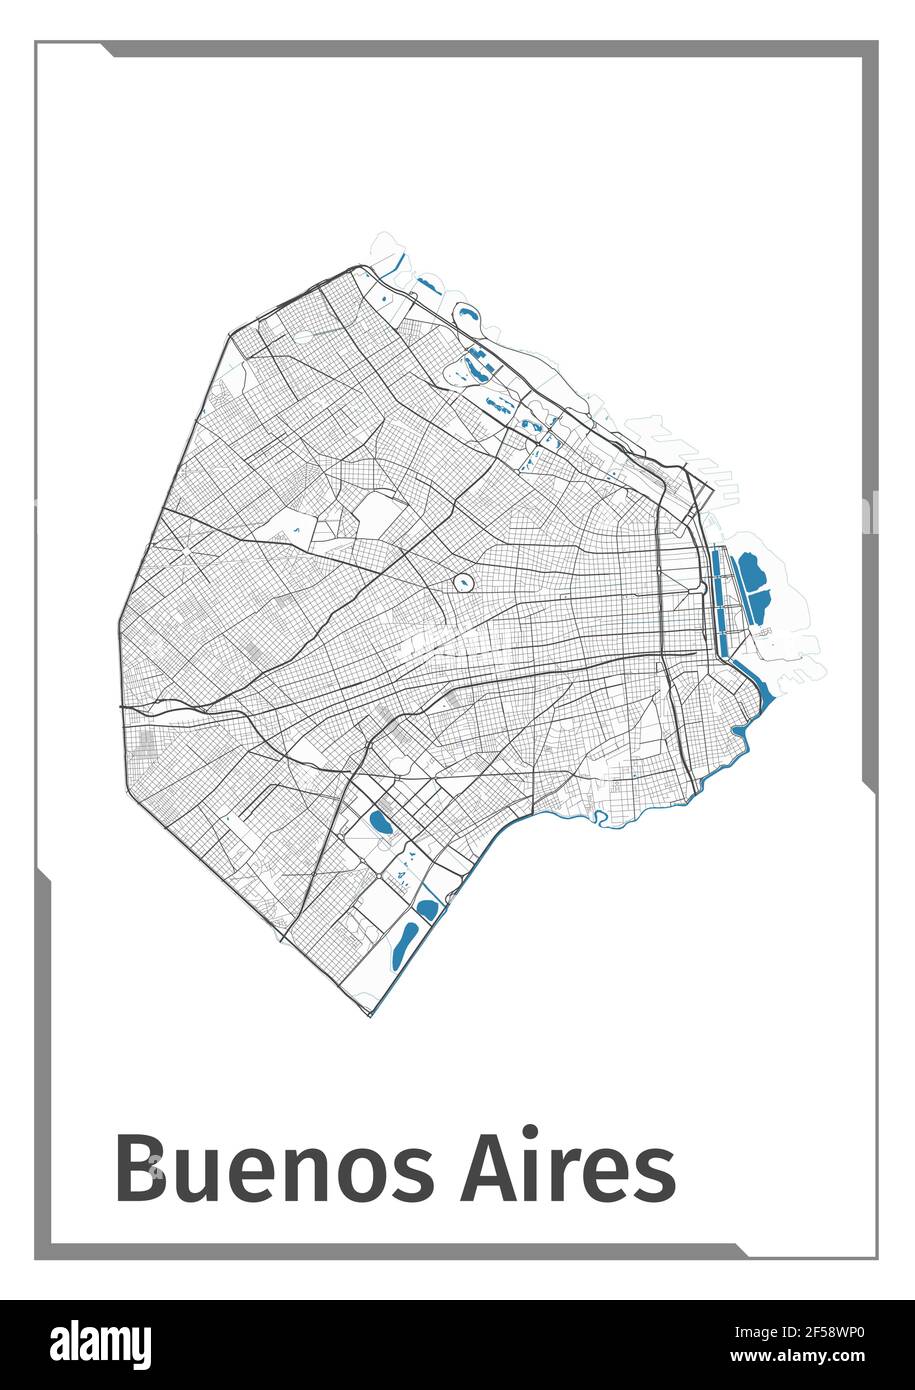 Buenos Aires Kartenplakat, administrative Grundriss Ansicht. Schwarz, weiß und blau detaillierte Design-Karte von Buenos Aires Stadt mit Flüssen und Straßen. Outlin Stock Vektor